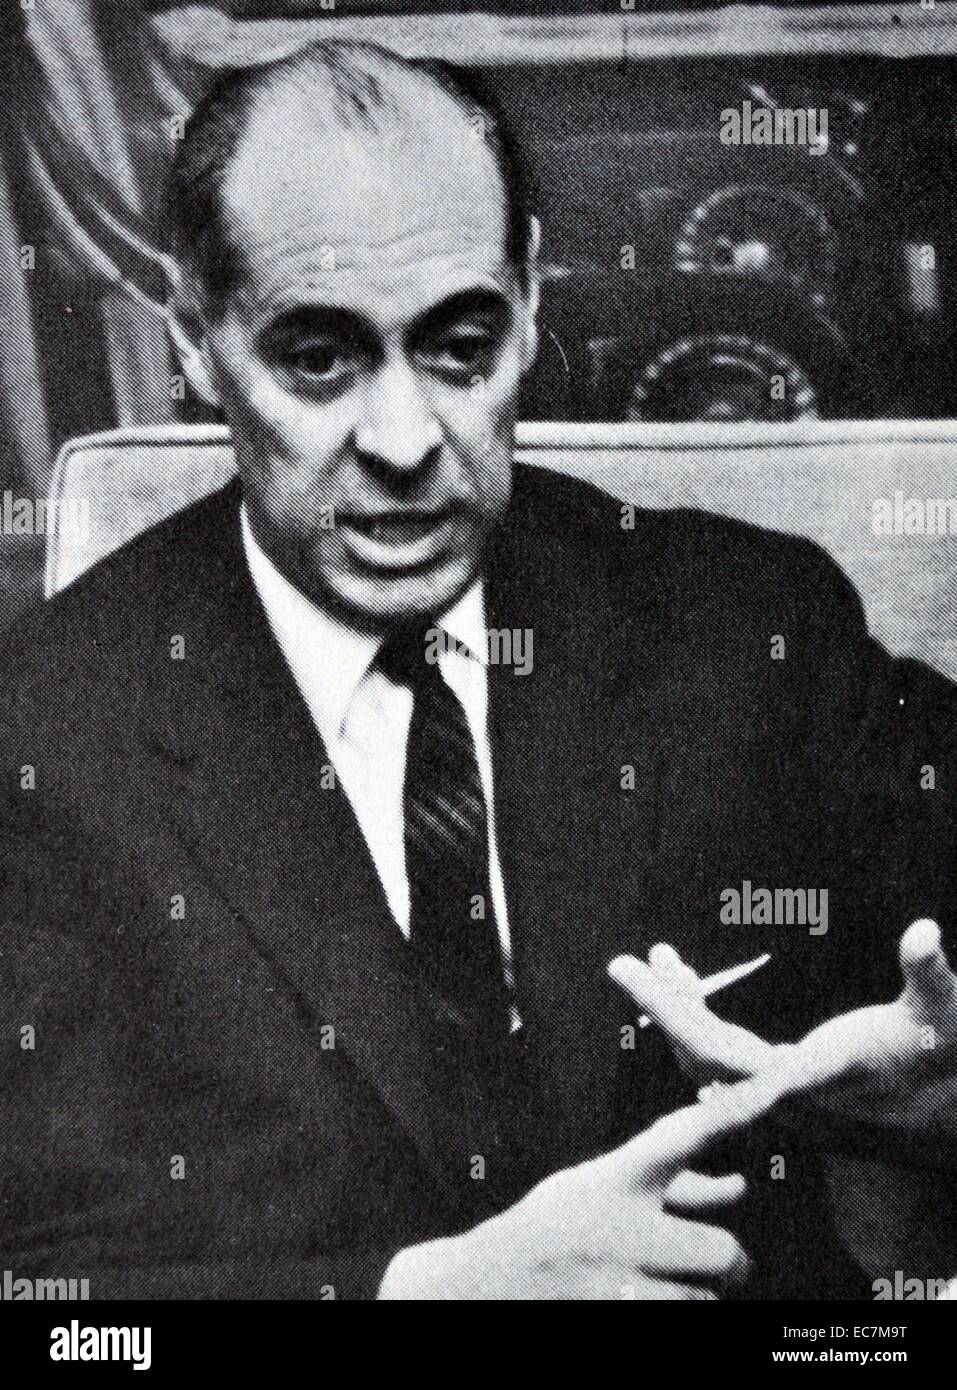 Laureano López Rodó (18 de noviembre de 1920 - 11 de marzo de 2000) fue un abogado español, político y diplomático, quien se desempeñó como Ministro de Relaciones Exteriores durante el gobierno de Francisco Franco Foto de stock